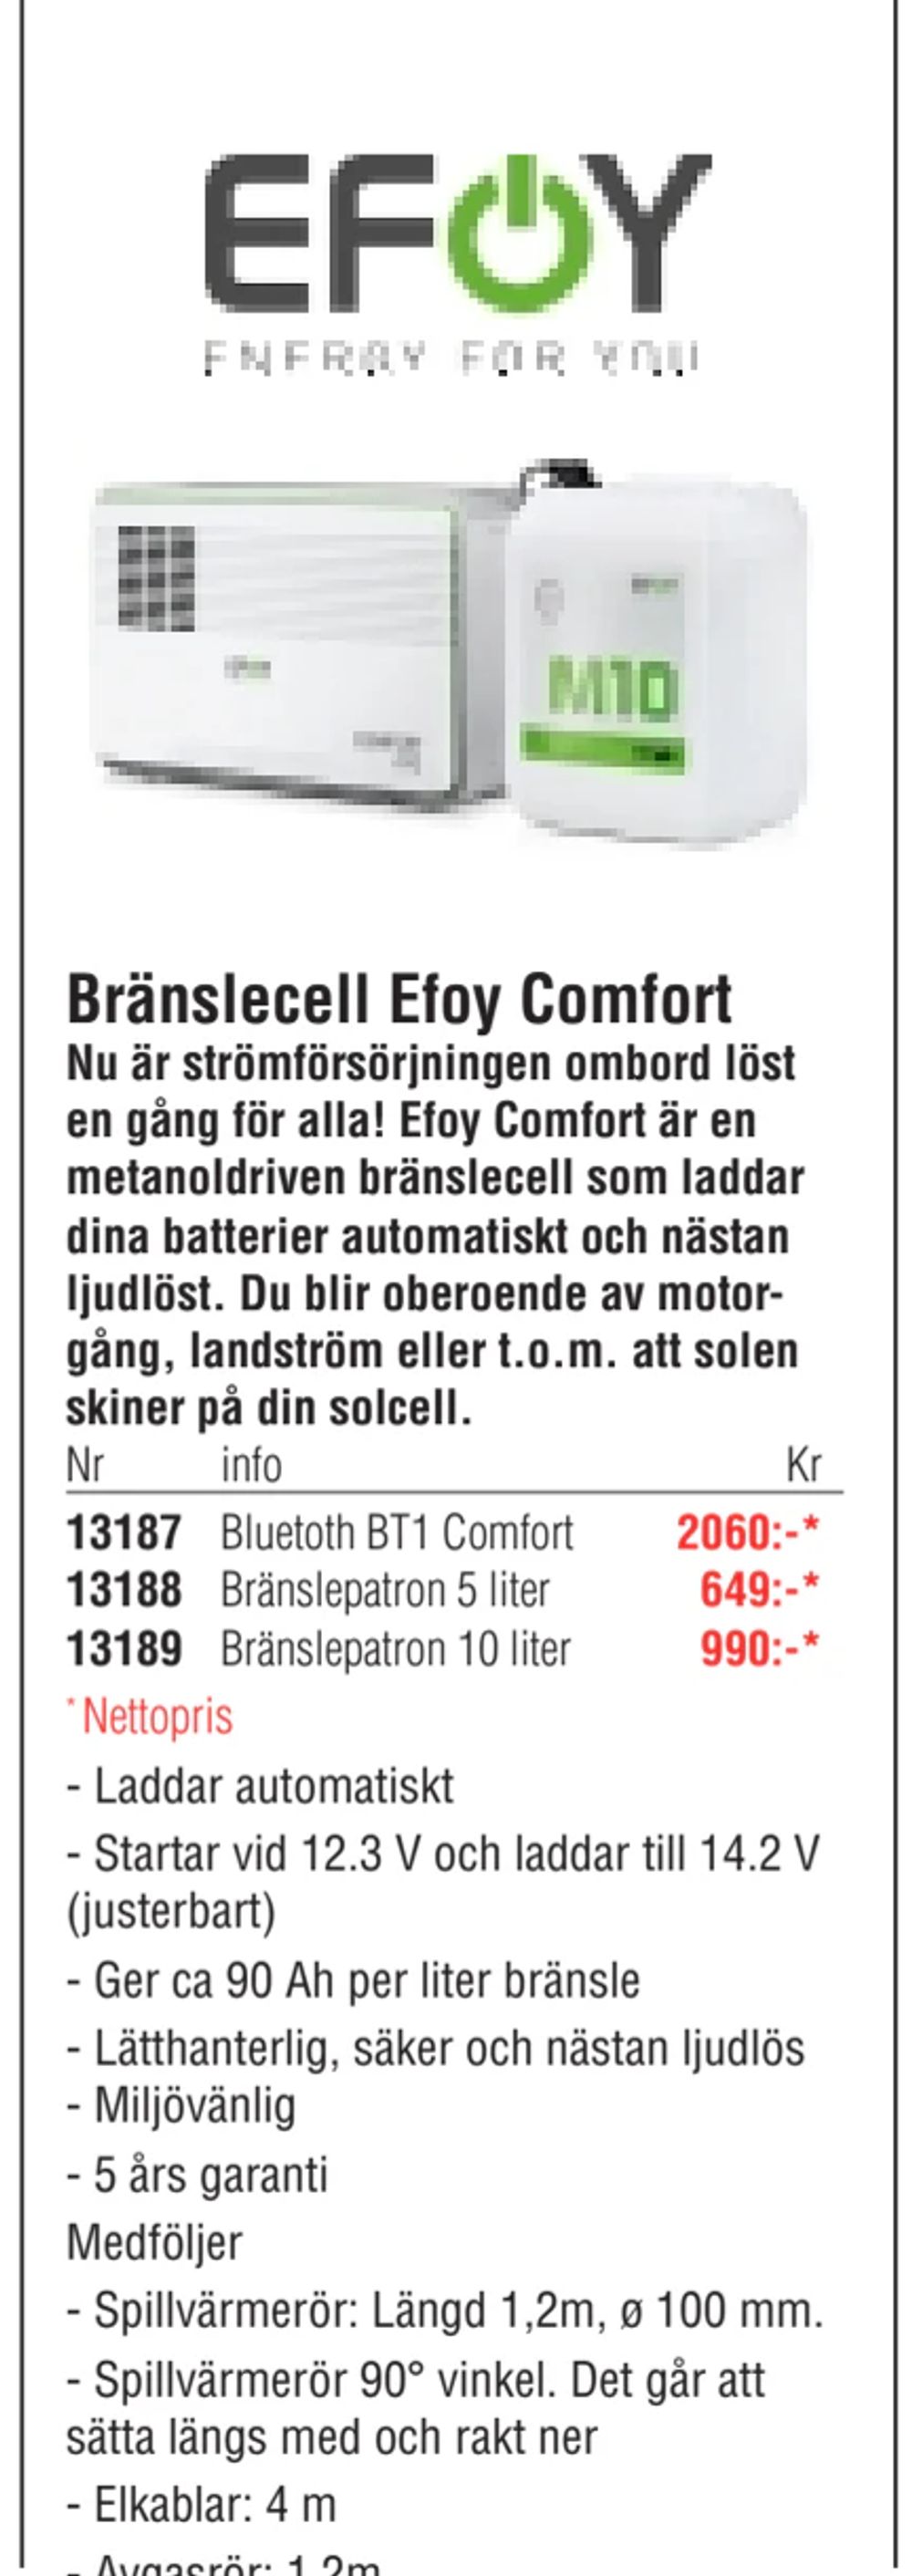 Erbjudanden på Bränslecell Efoy Comfort från Erlandsons Brygga för 2 060 kr